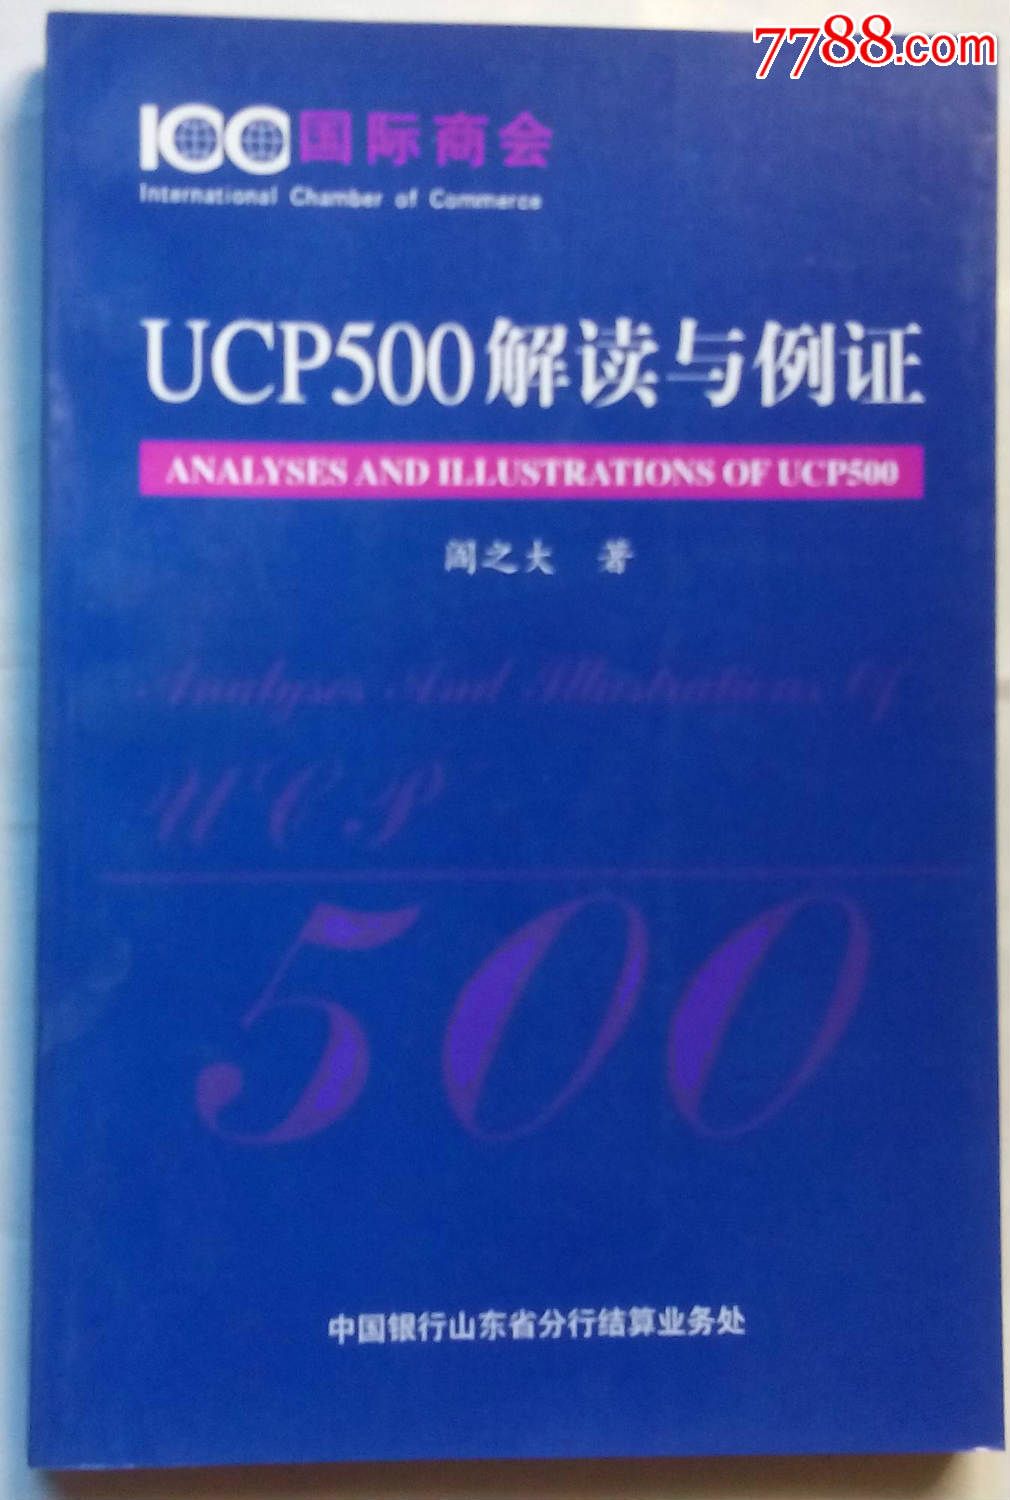 UCP500